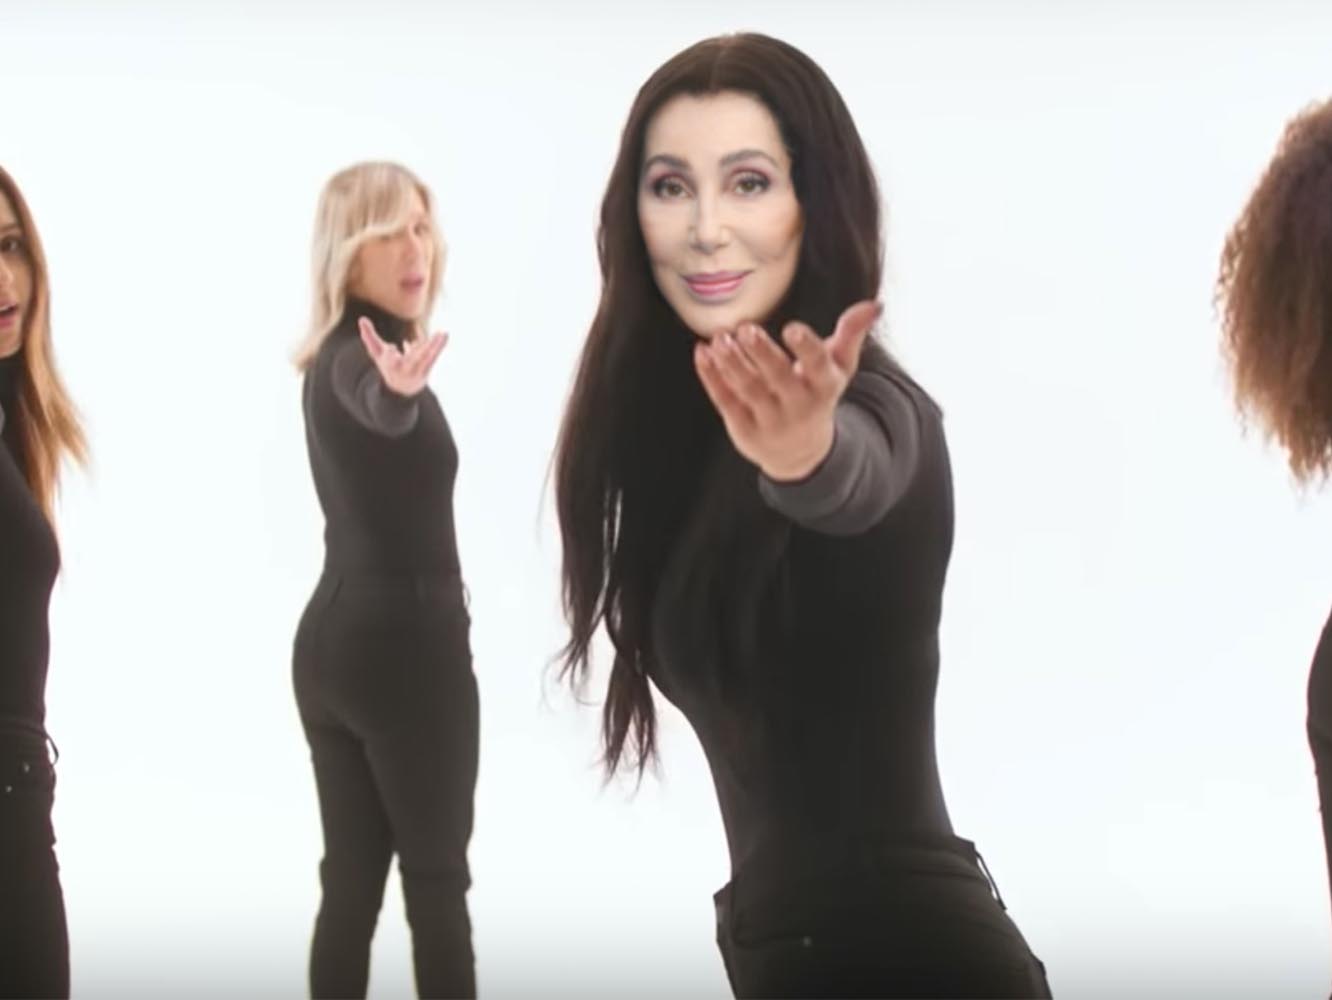  Cher rinde homenaje a ABBA y a todas las mujeres menos una en el vídeo de ‘SOS’